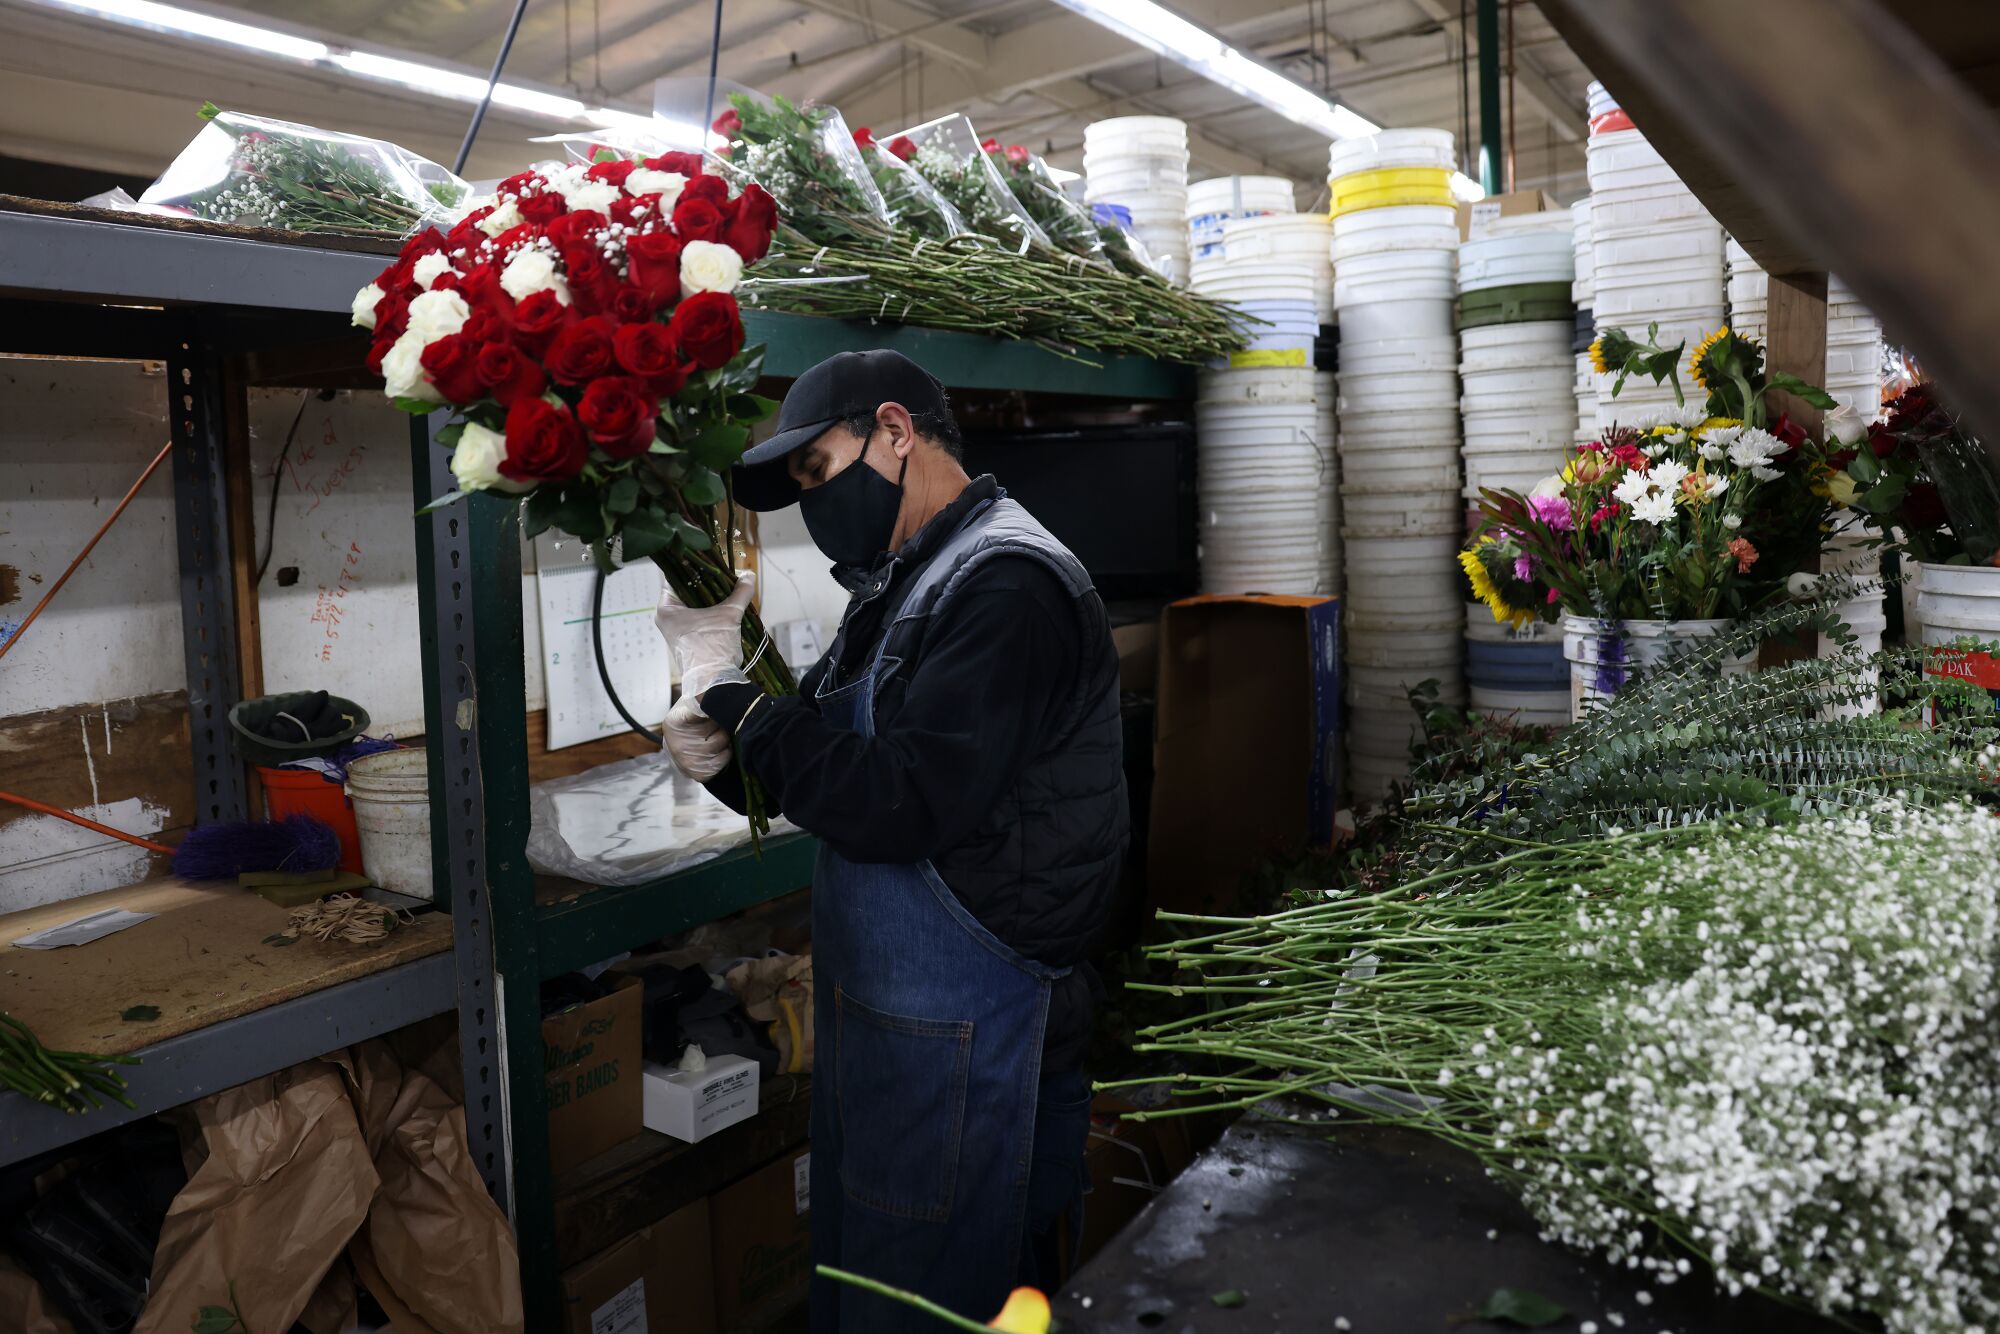 Alfredo Campos arranges bouquets at Julia's Wholesale Flowers.